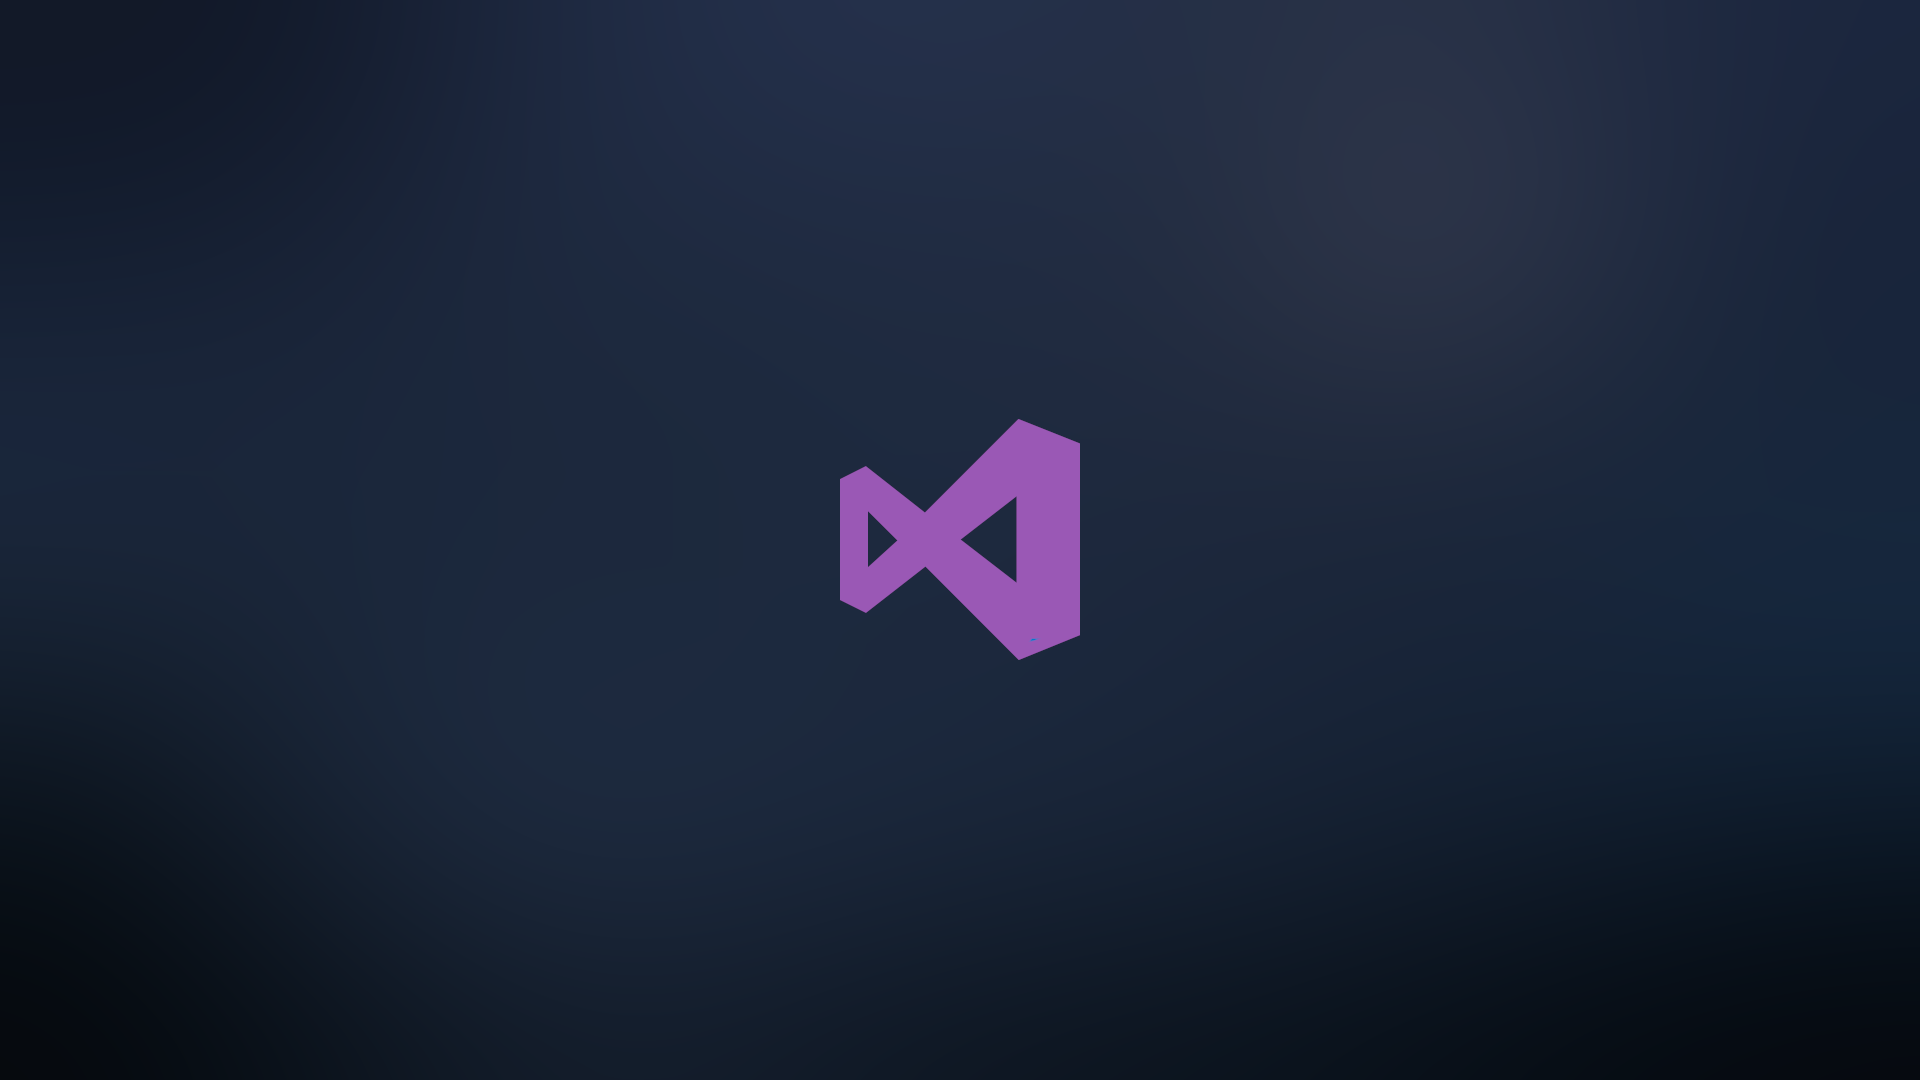 Visual Studio Code Wallpaper: Tự tạo không gian làm việc độc đáo với những thước hình nền Visual Studio Code Wallpaper đẹp mắt. Tận dụng tính năng tùy chỉnh hình nền của Visual Studio Code để tạo không gian làm việc phong phú và độc đáo chỉ dành riêng cho bạn. Hãy khám phá ngay!